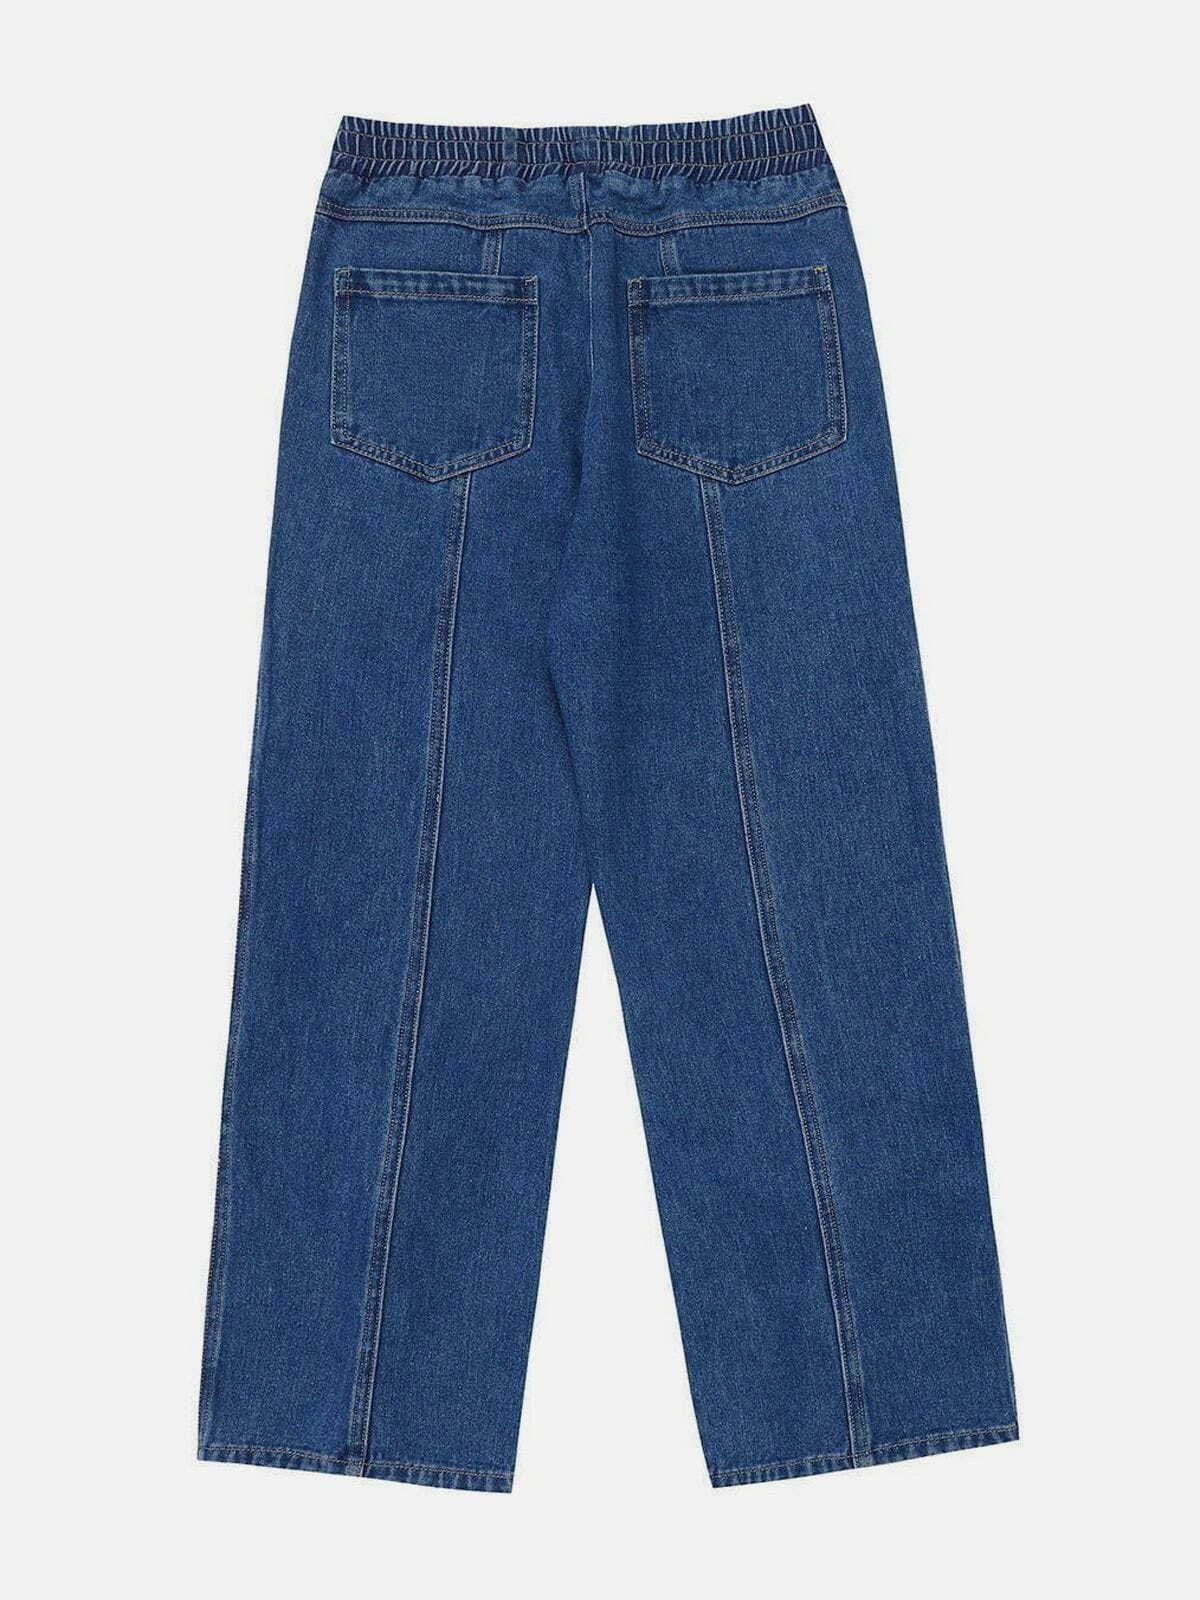 vintage buckle slit jeans edgy streetwear essential 1562